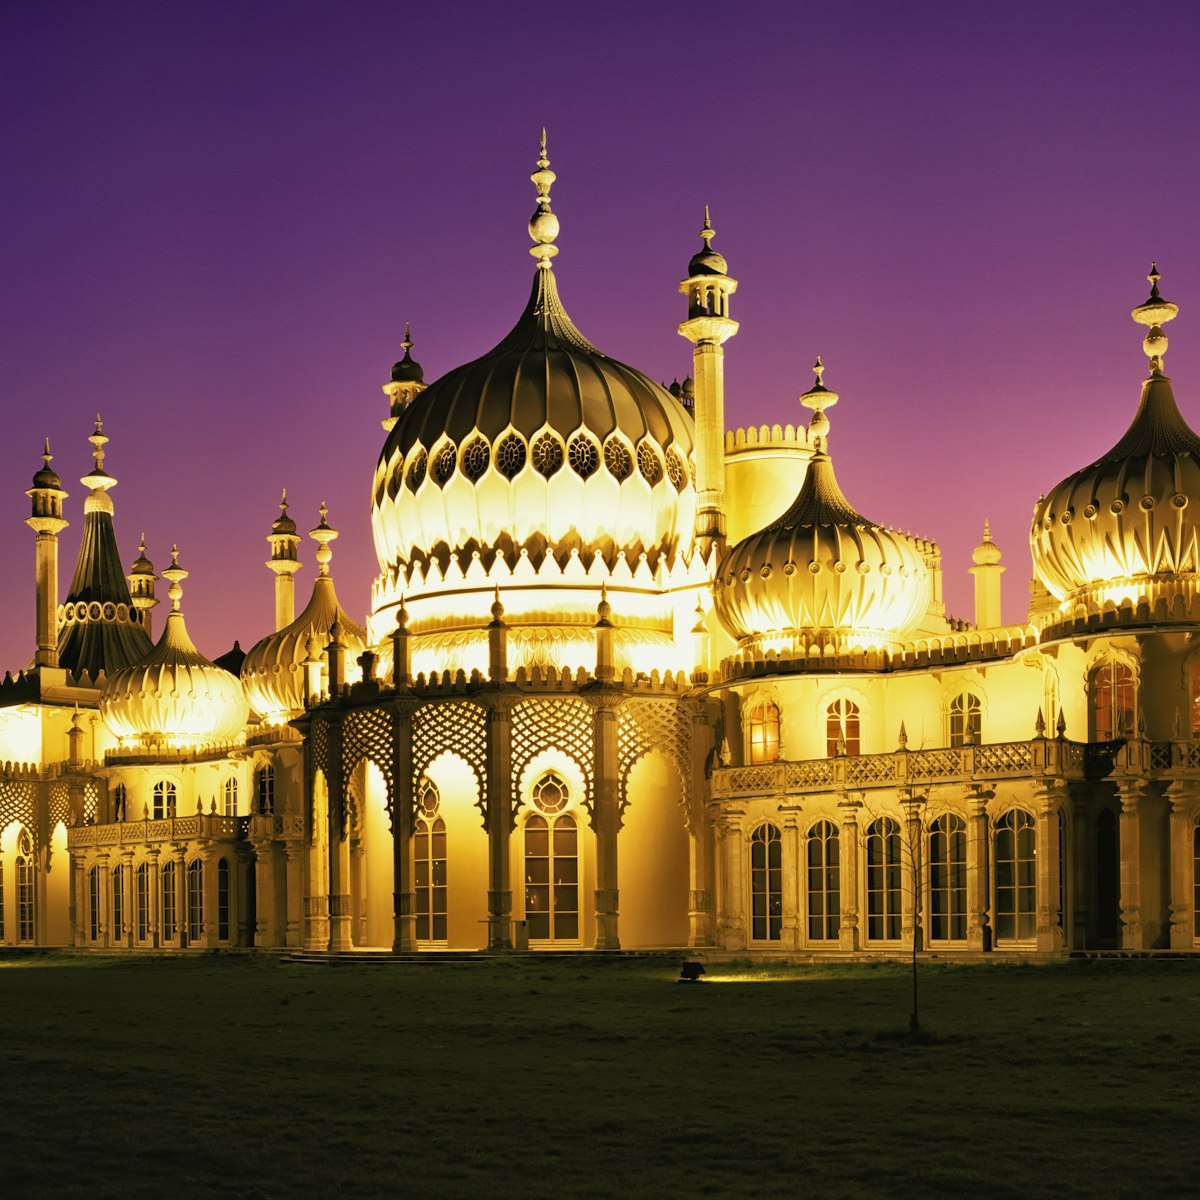 Illuminated Brighton Pavilion building at dusk, Brighton, Sussex, United Kingdom